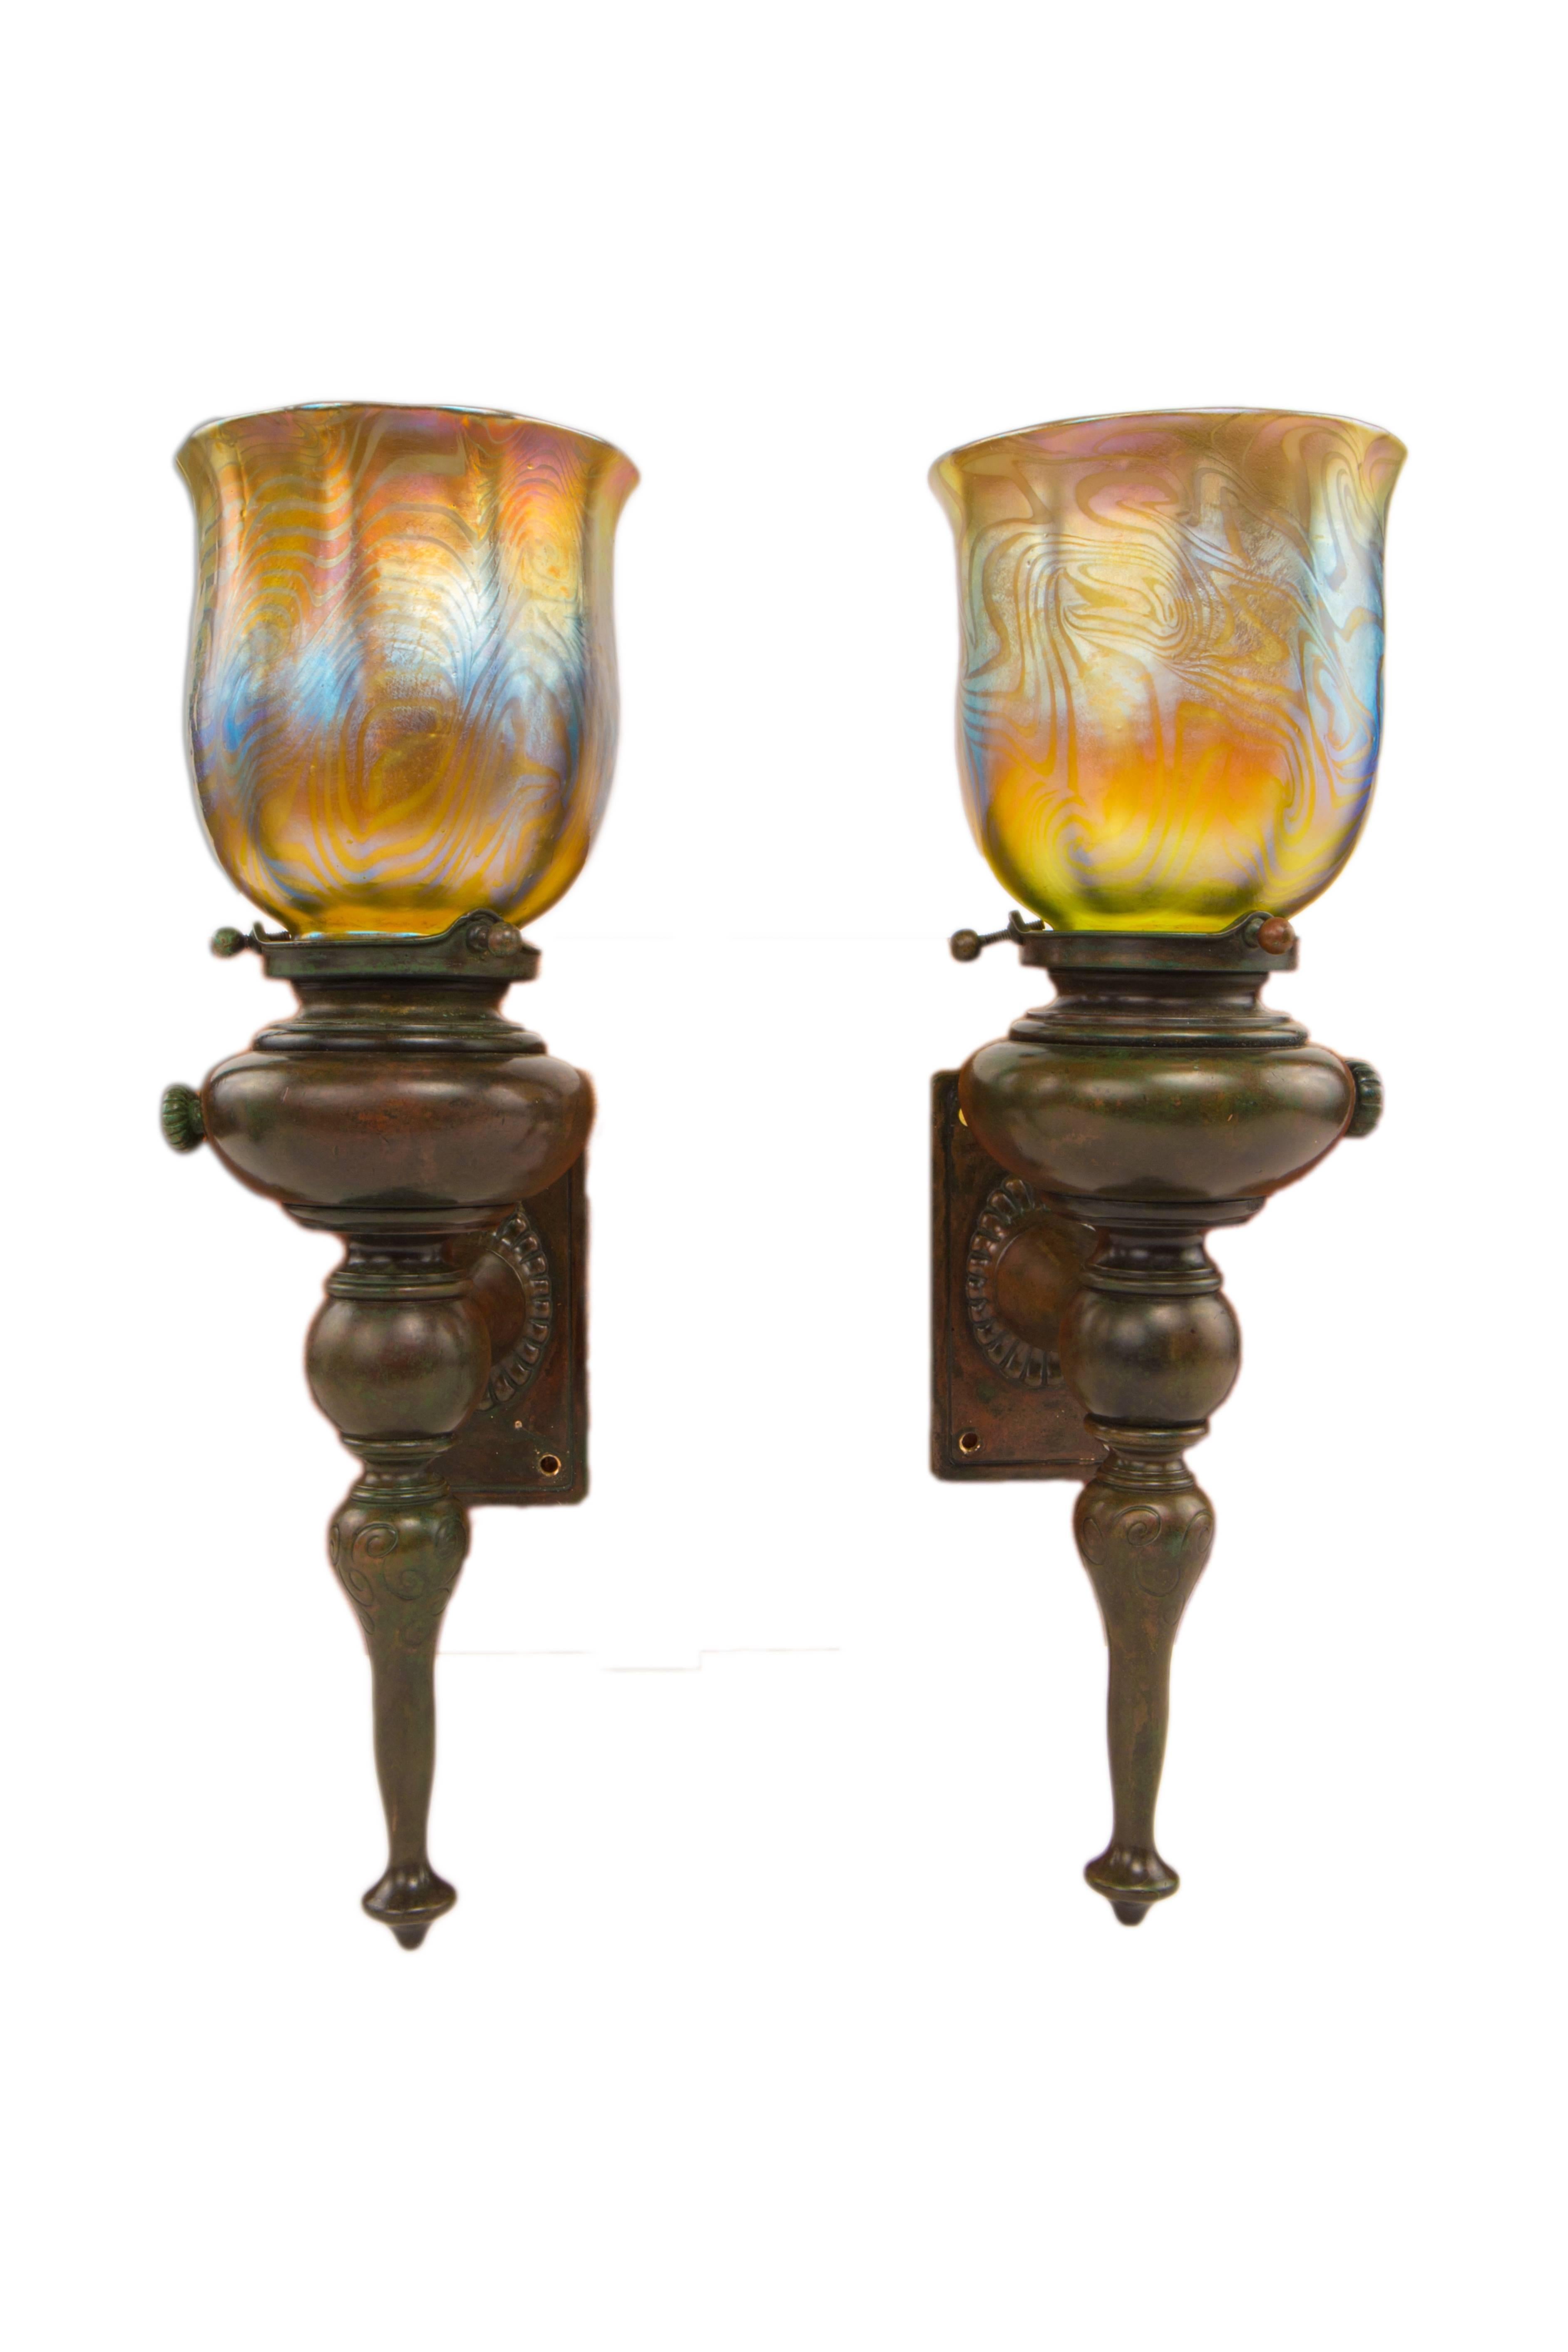 Pair of Art Nouveau Sconces by, Tiffany Studios